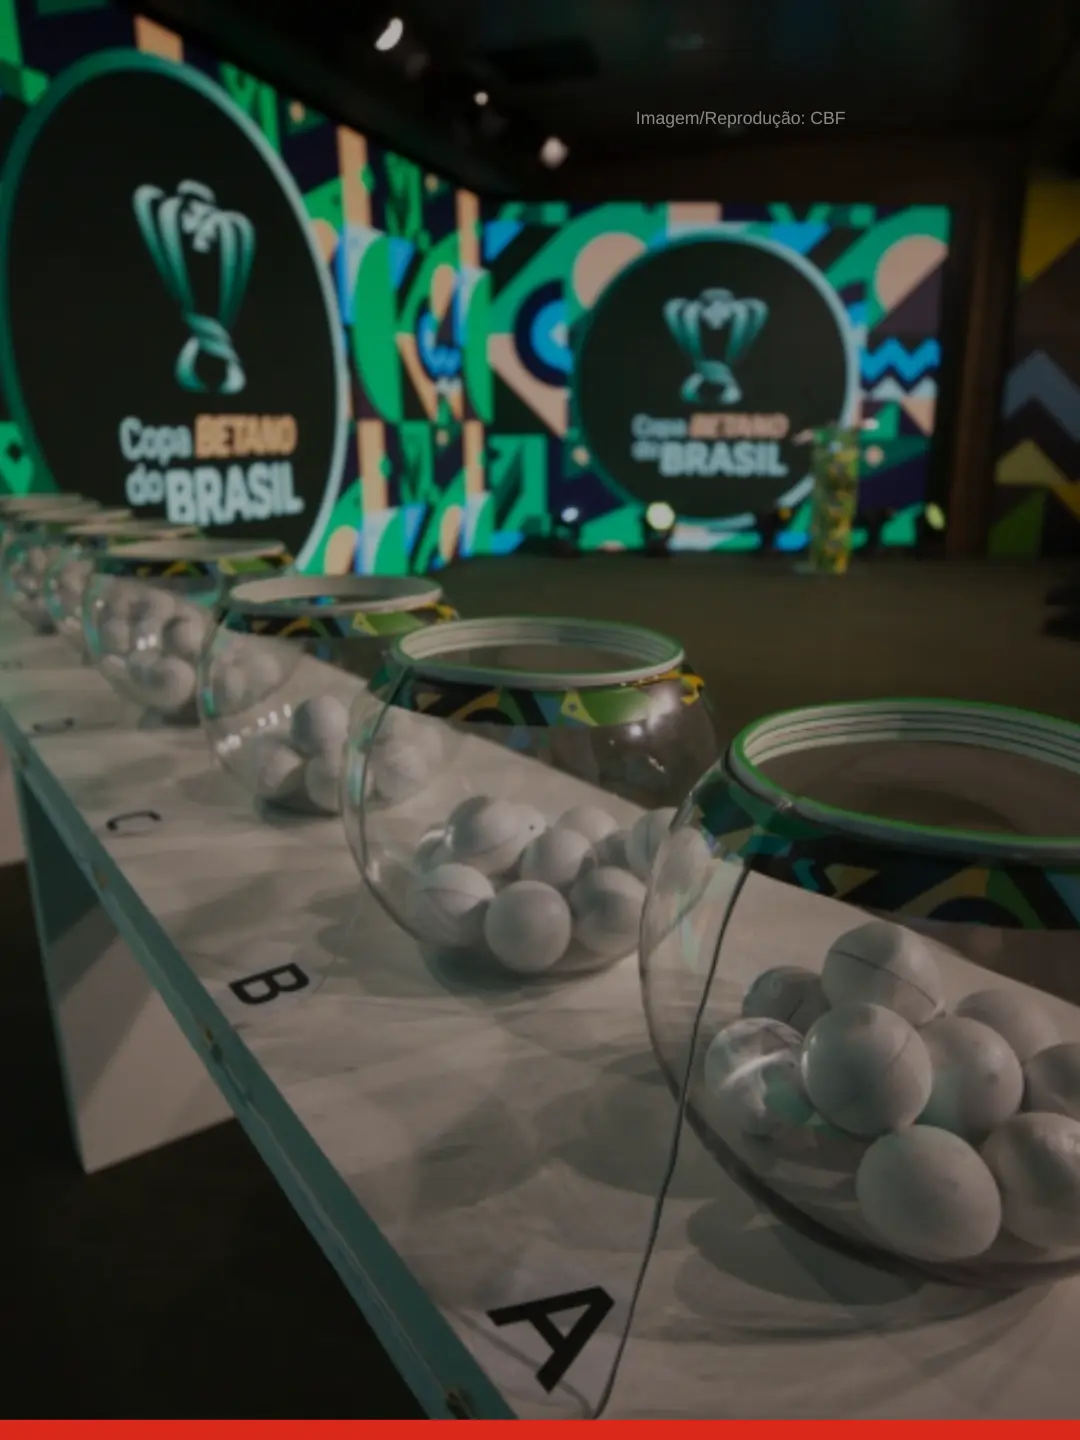 Primeira fase da Copa do Brasil 2023: jogos, quando é, onde